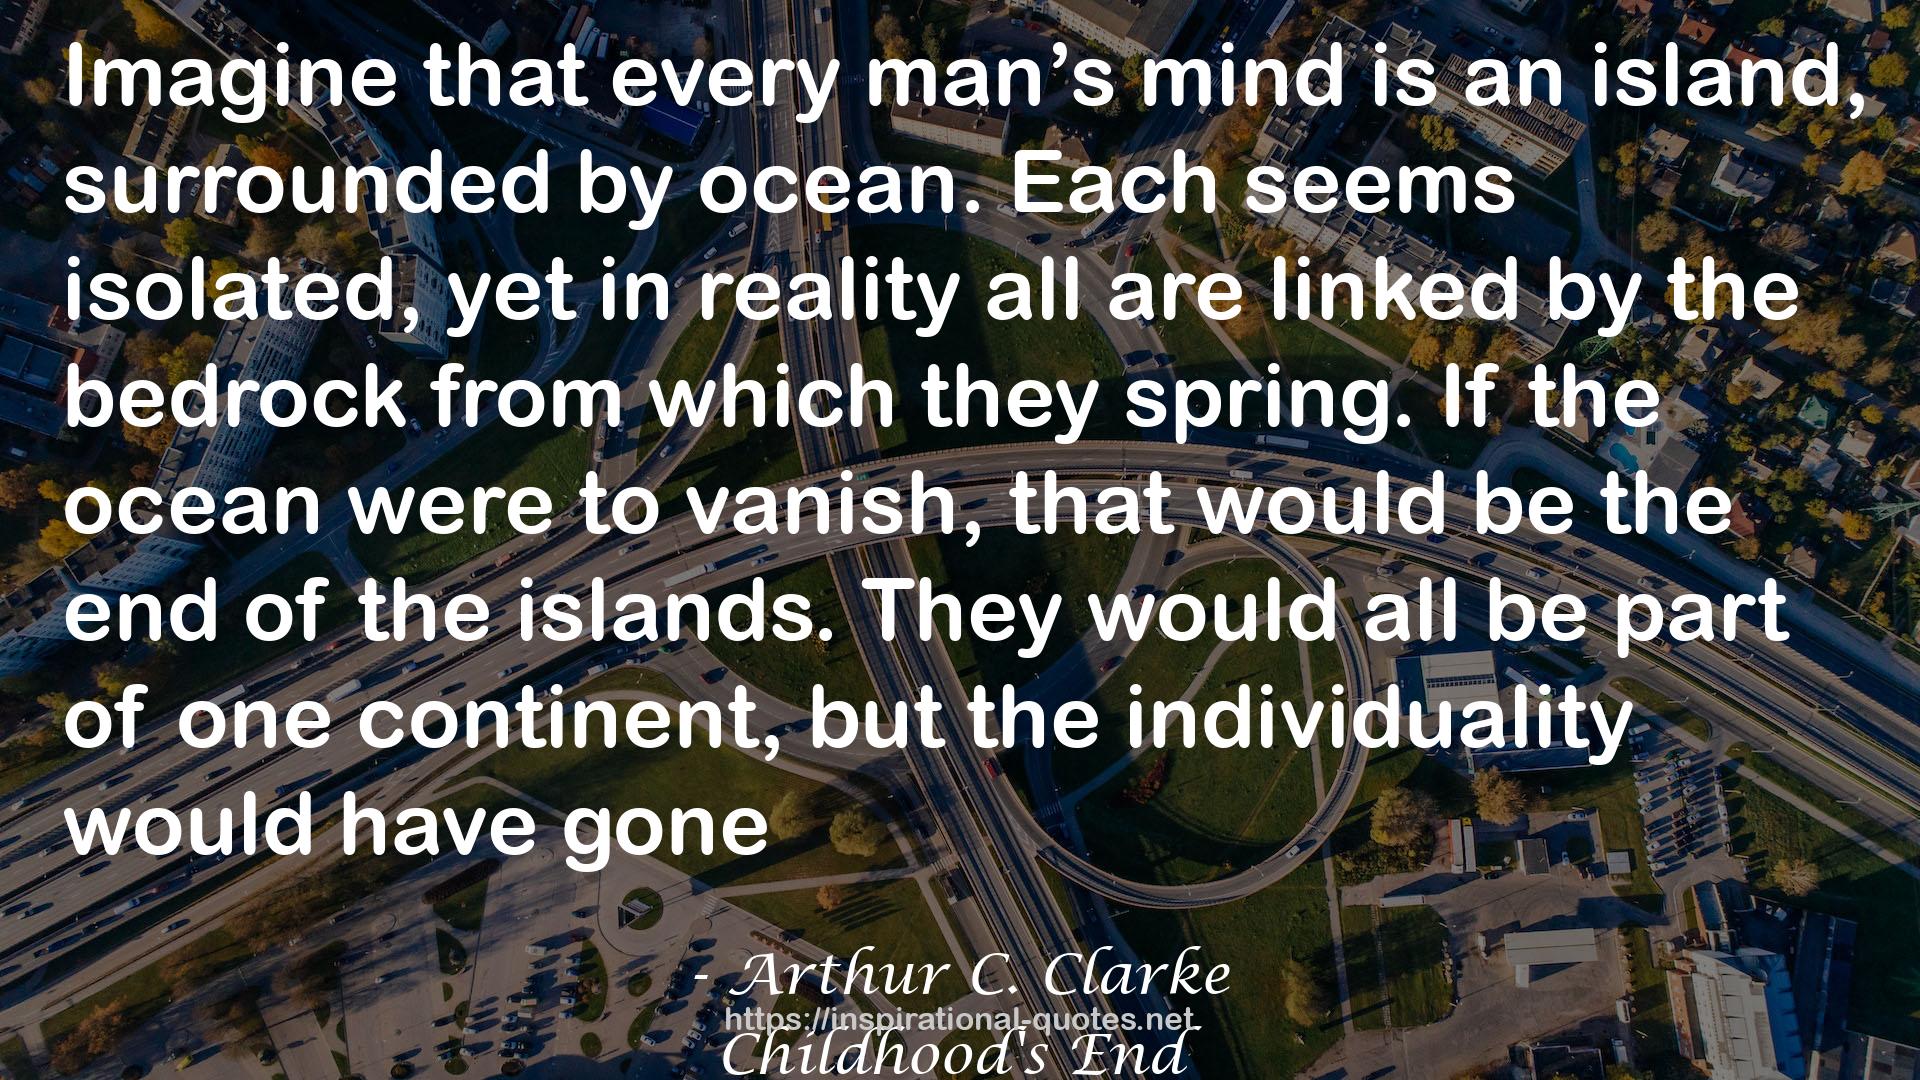 Arthur C. Clarke QUOTES